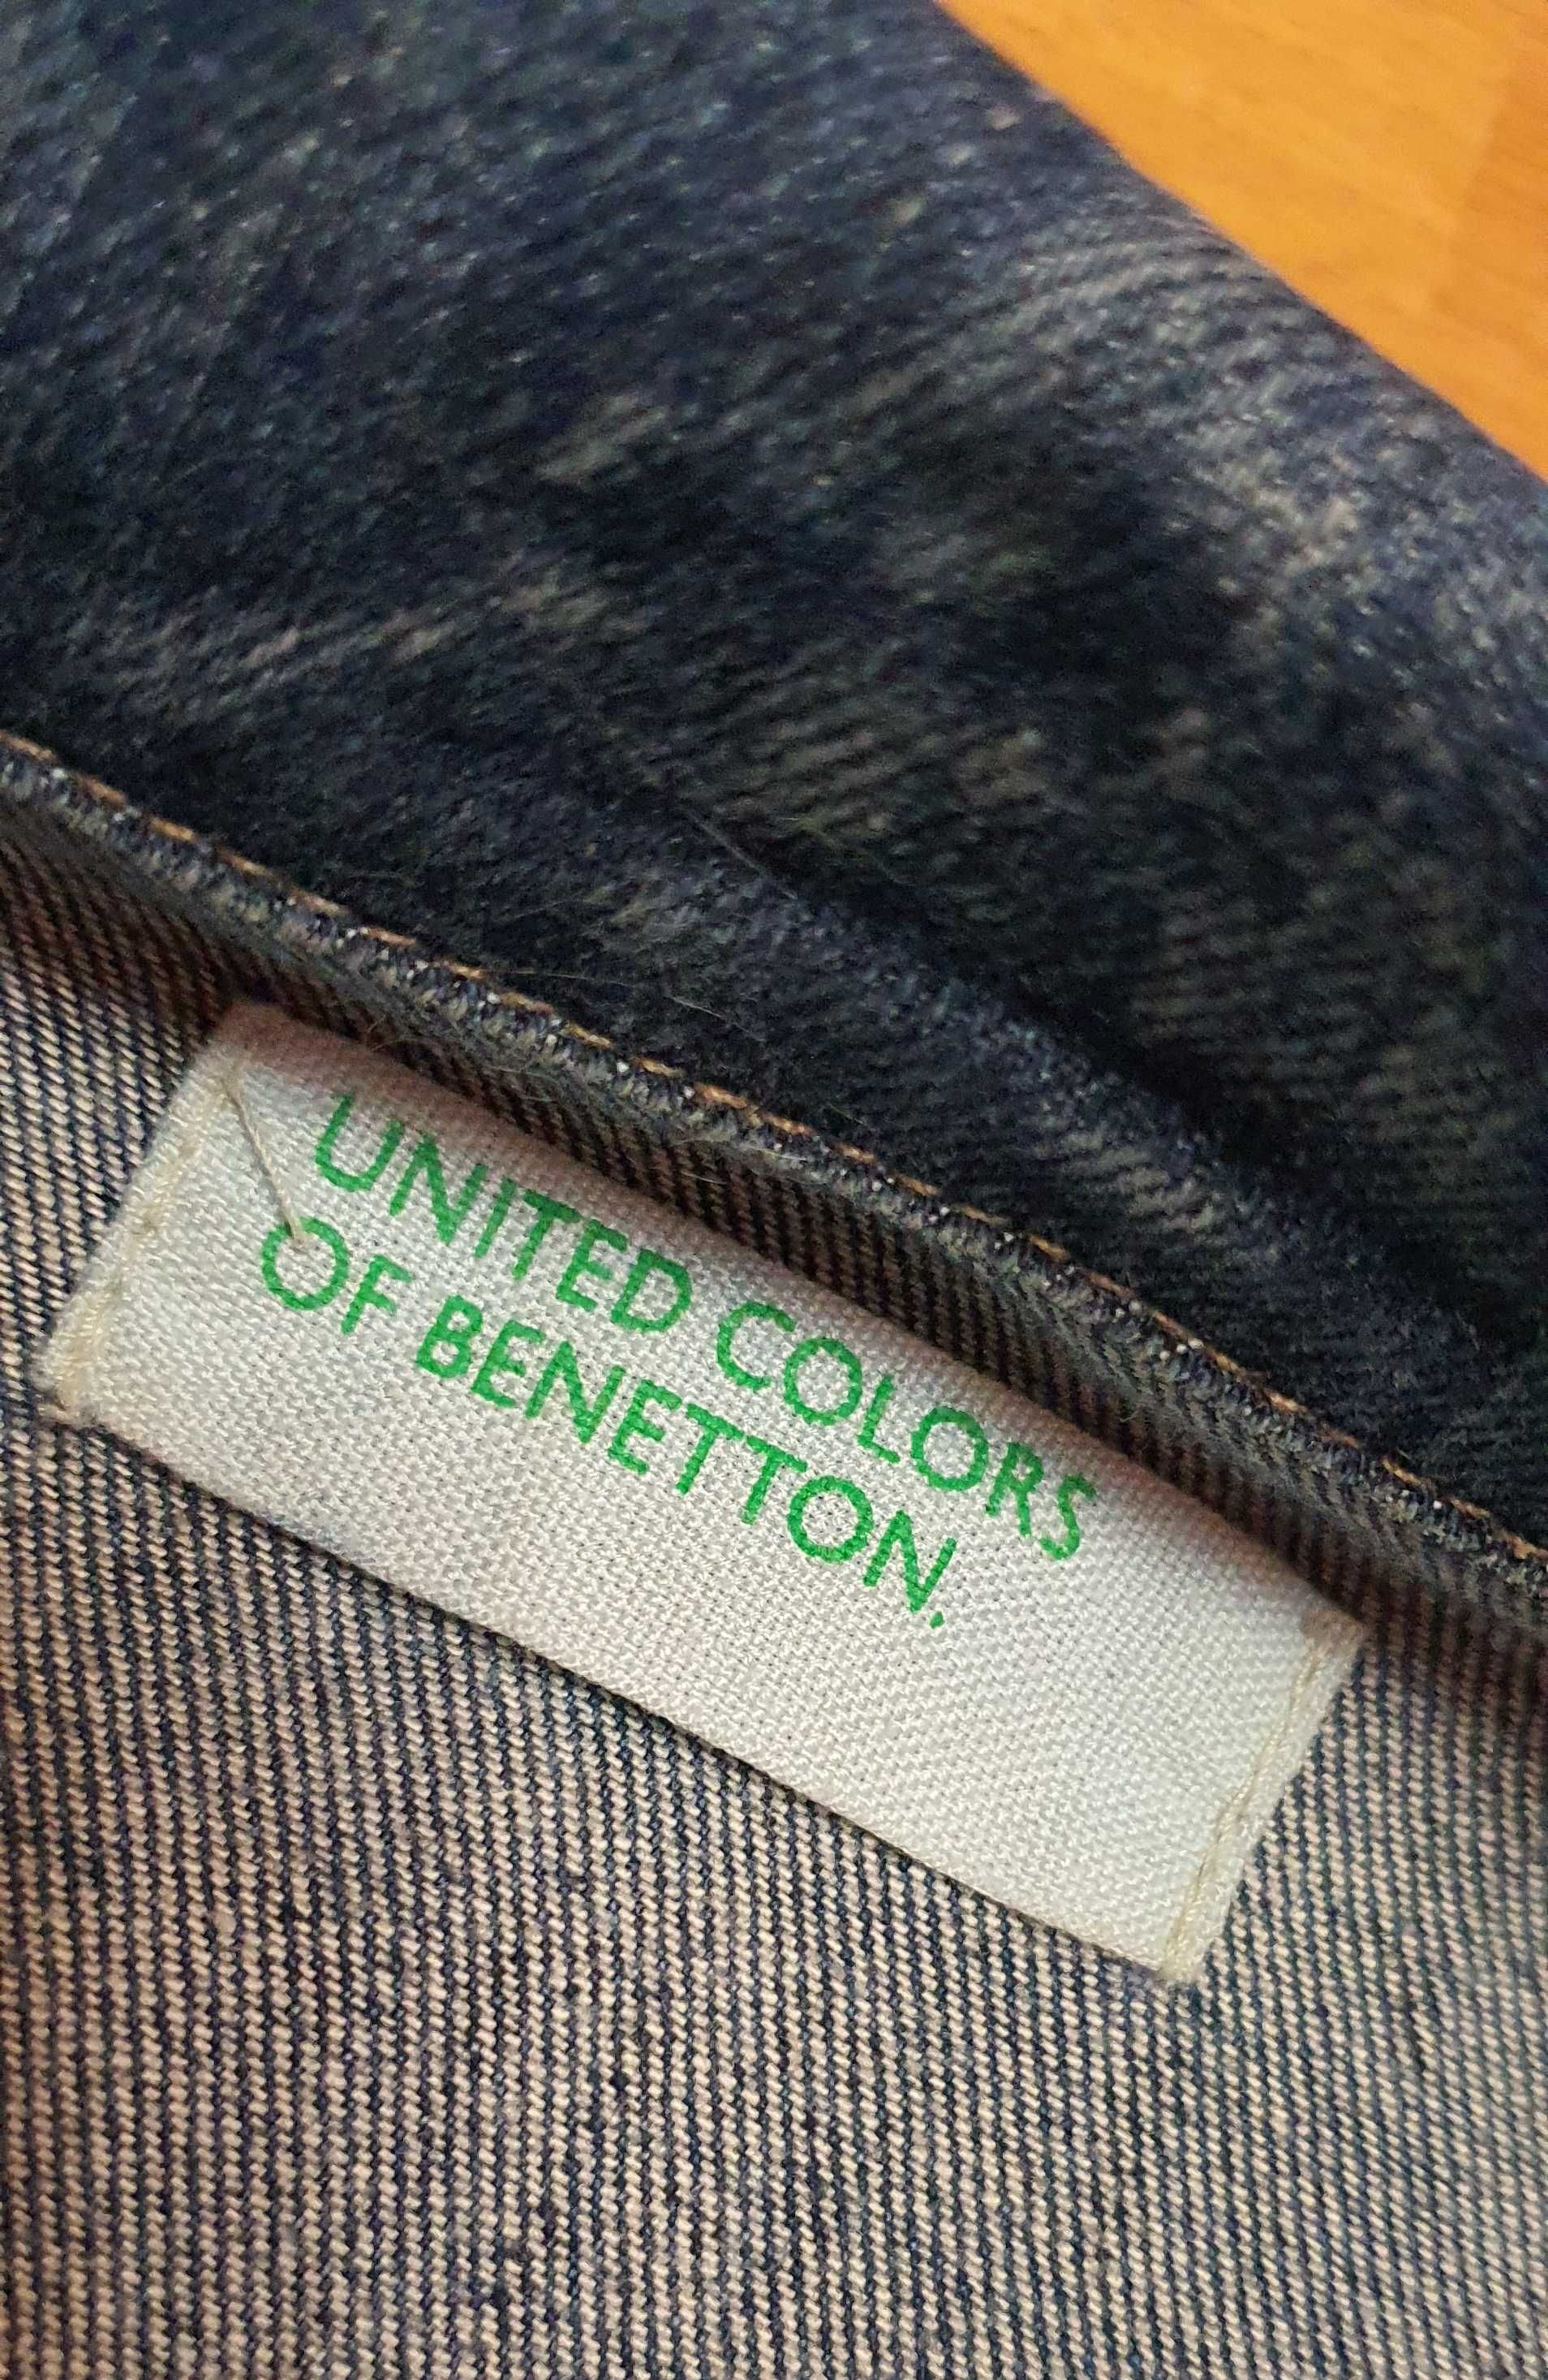 Пиджак джинсовый Colors of Benetton p.S